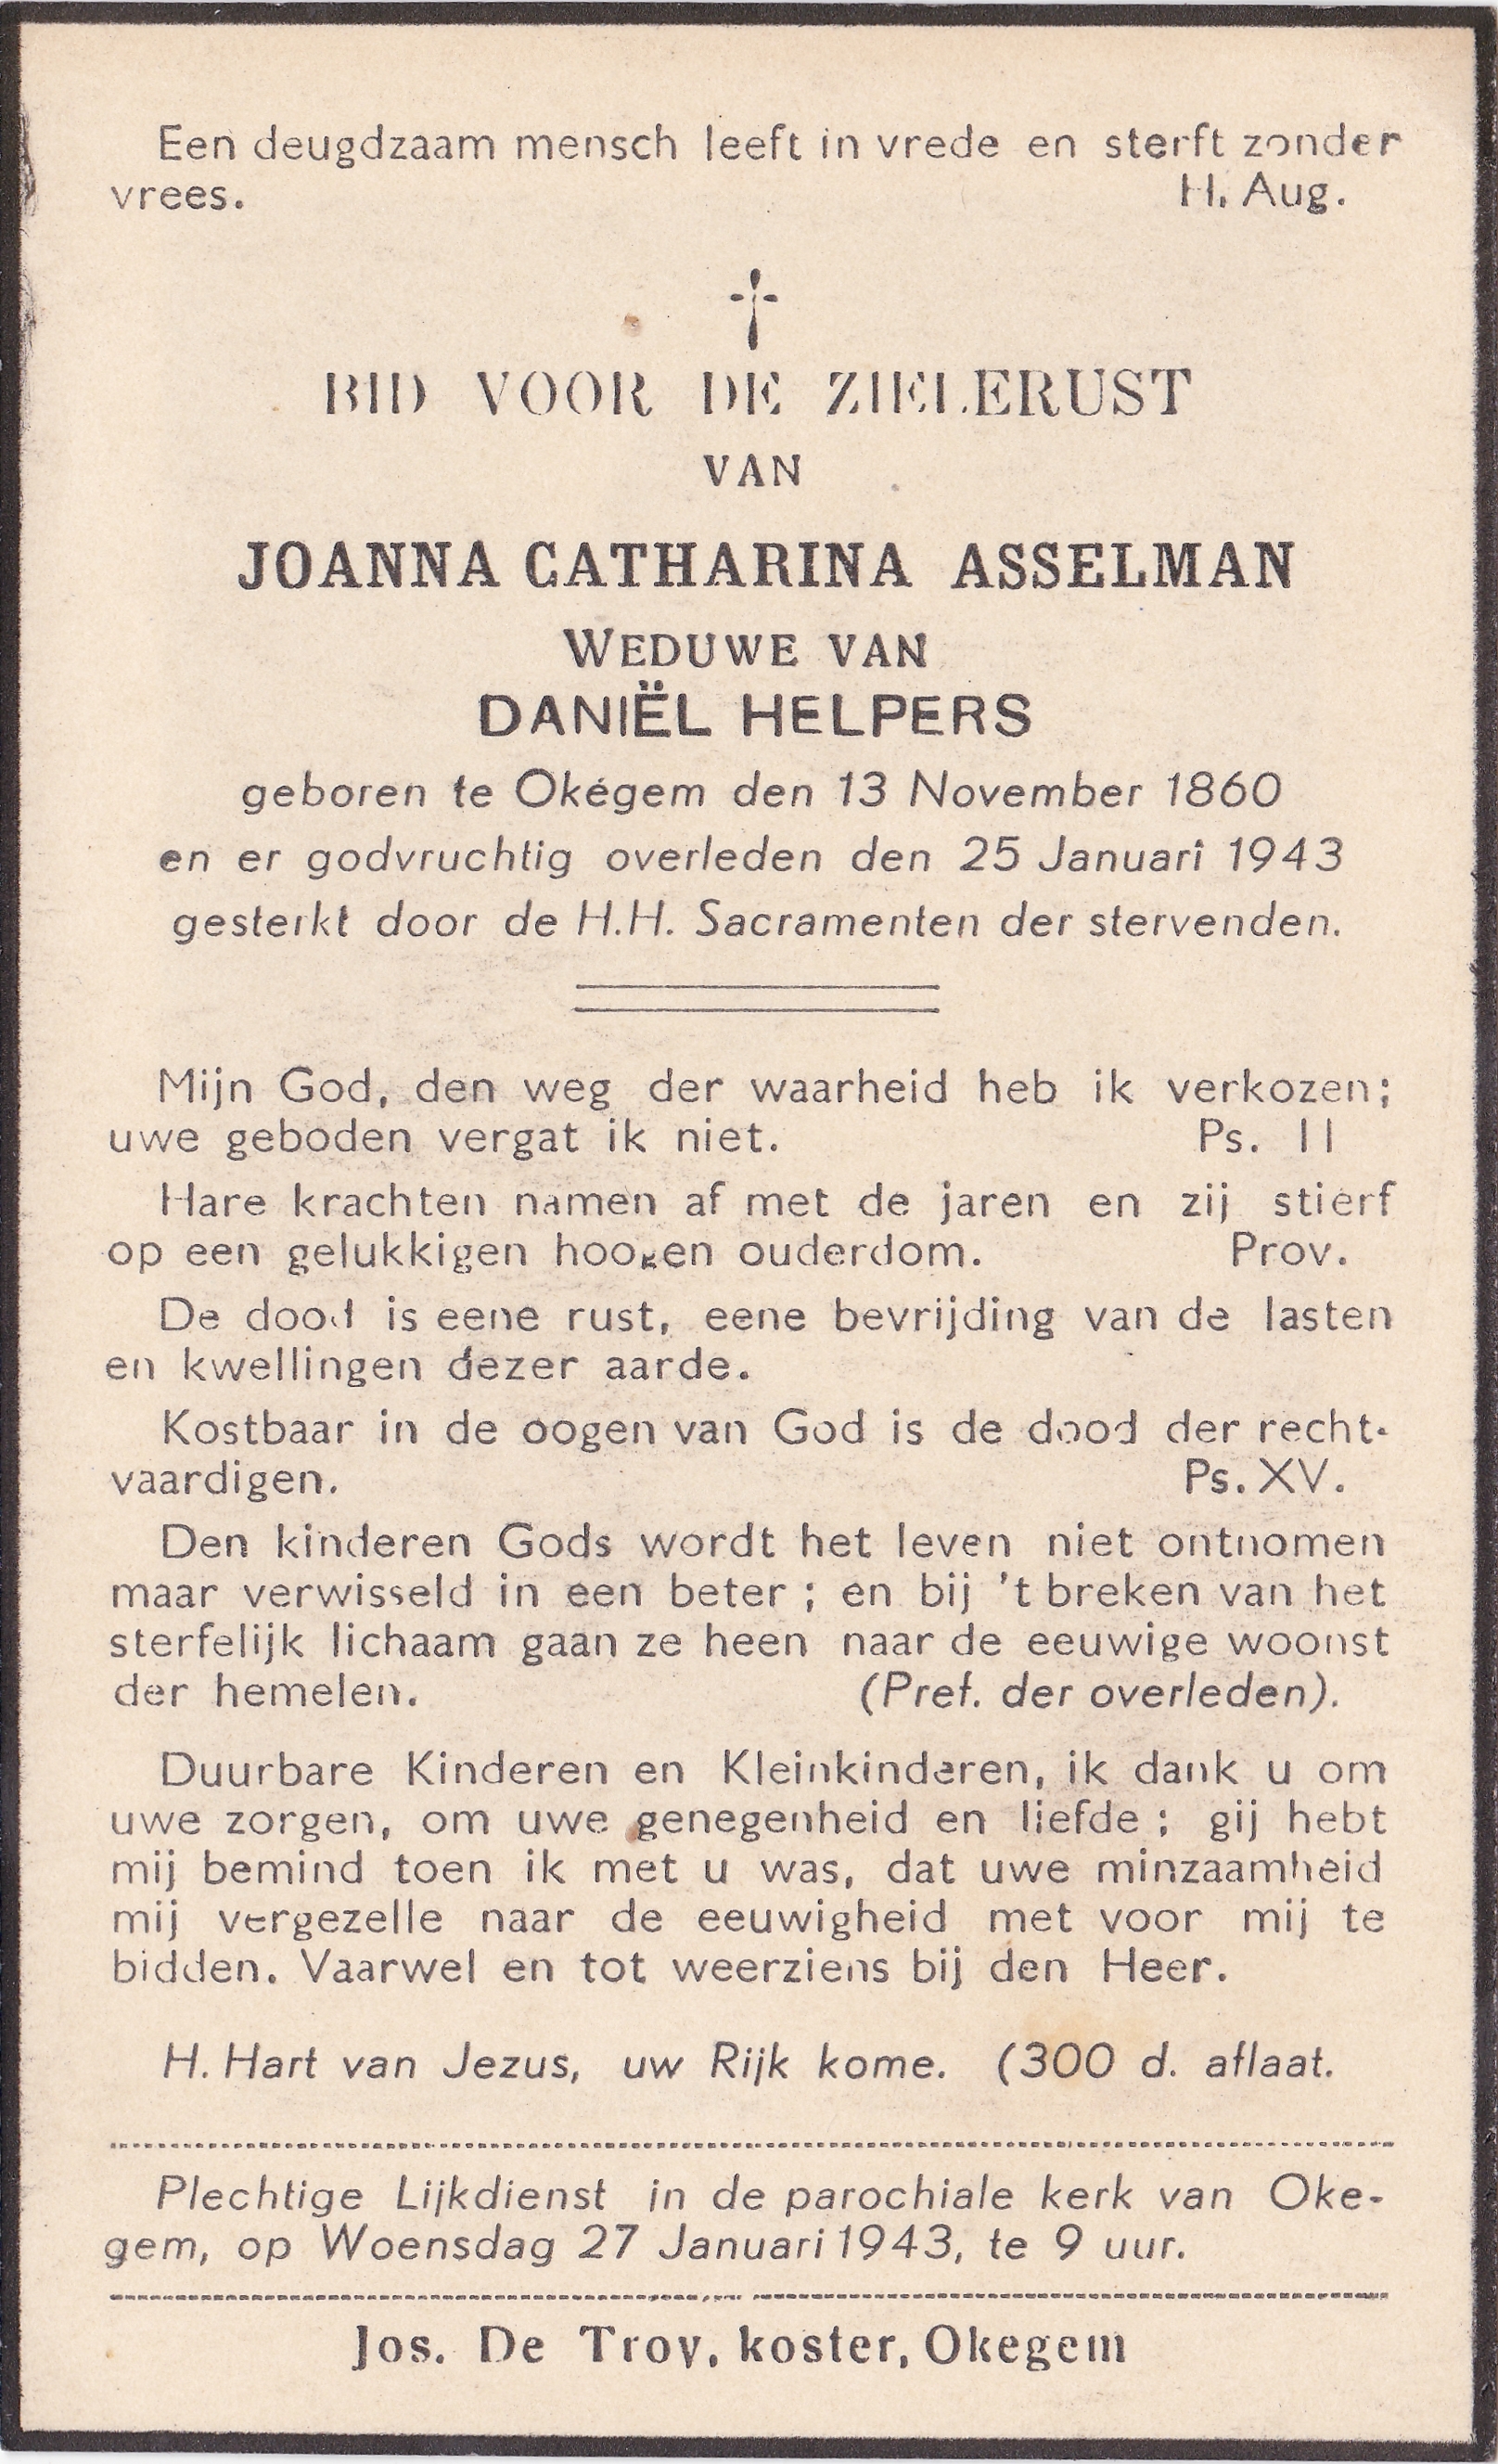 Asselman Joanna Catharina